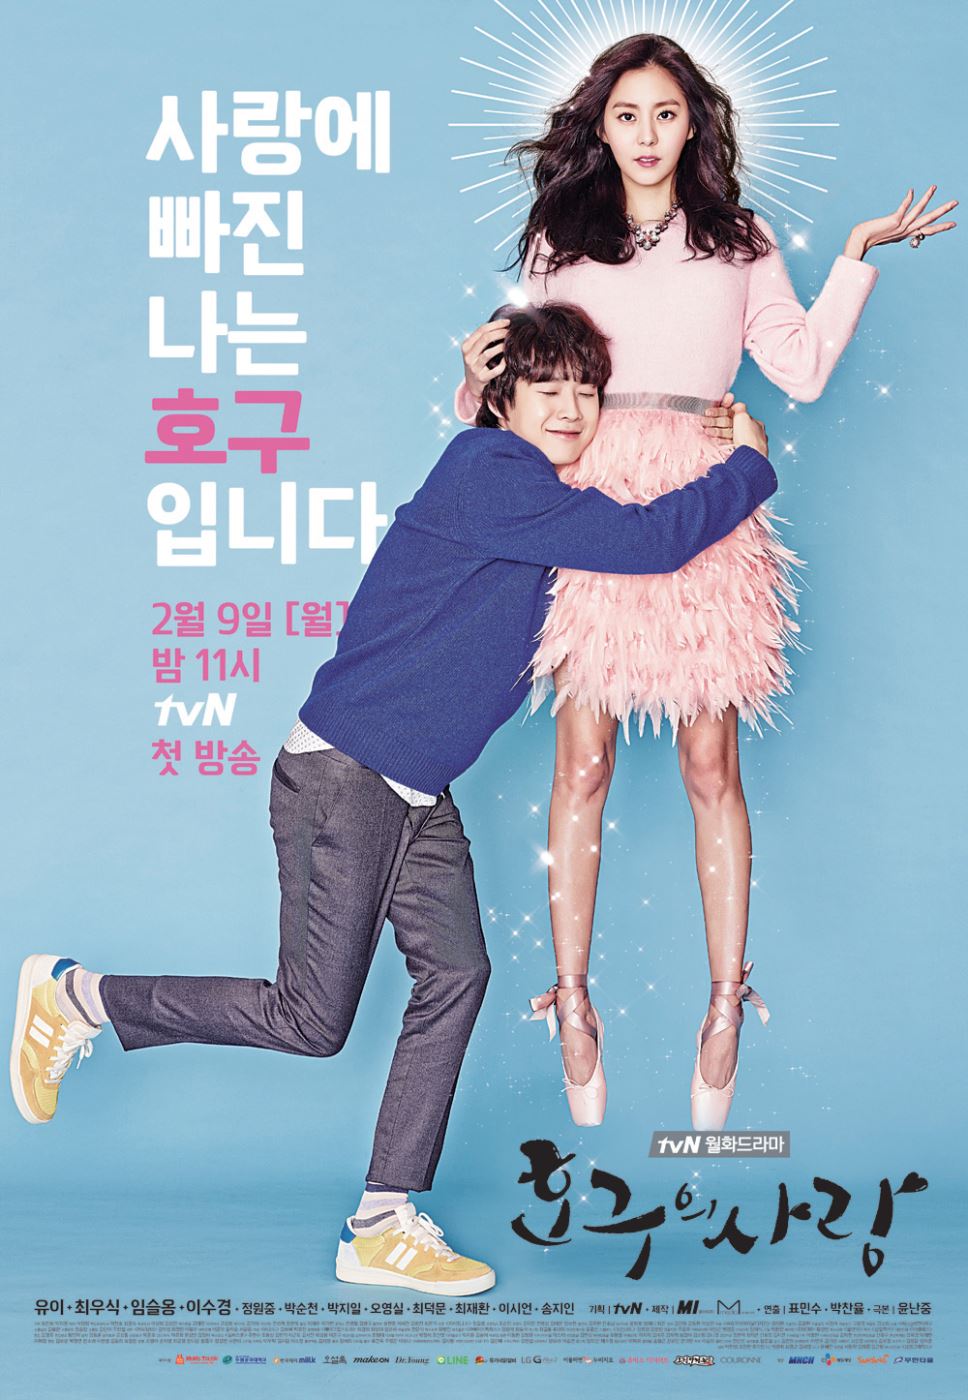 영화 속 명대사, 소설 속 사랑의 문장 | 얼루어 코리아 (Allure Korea)